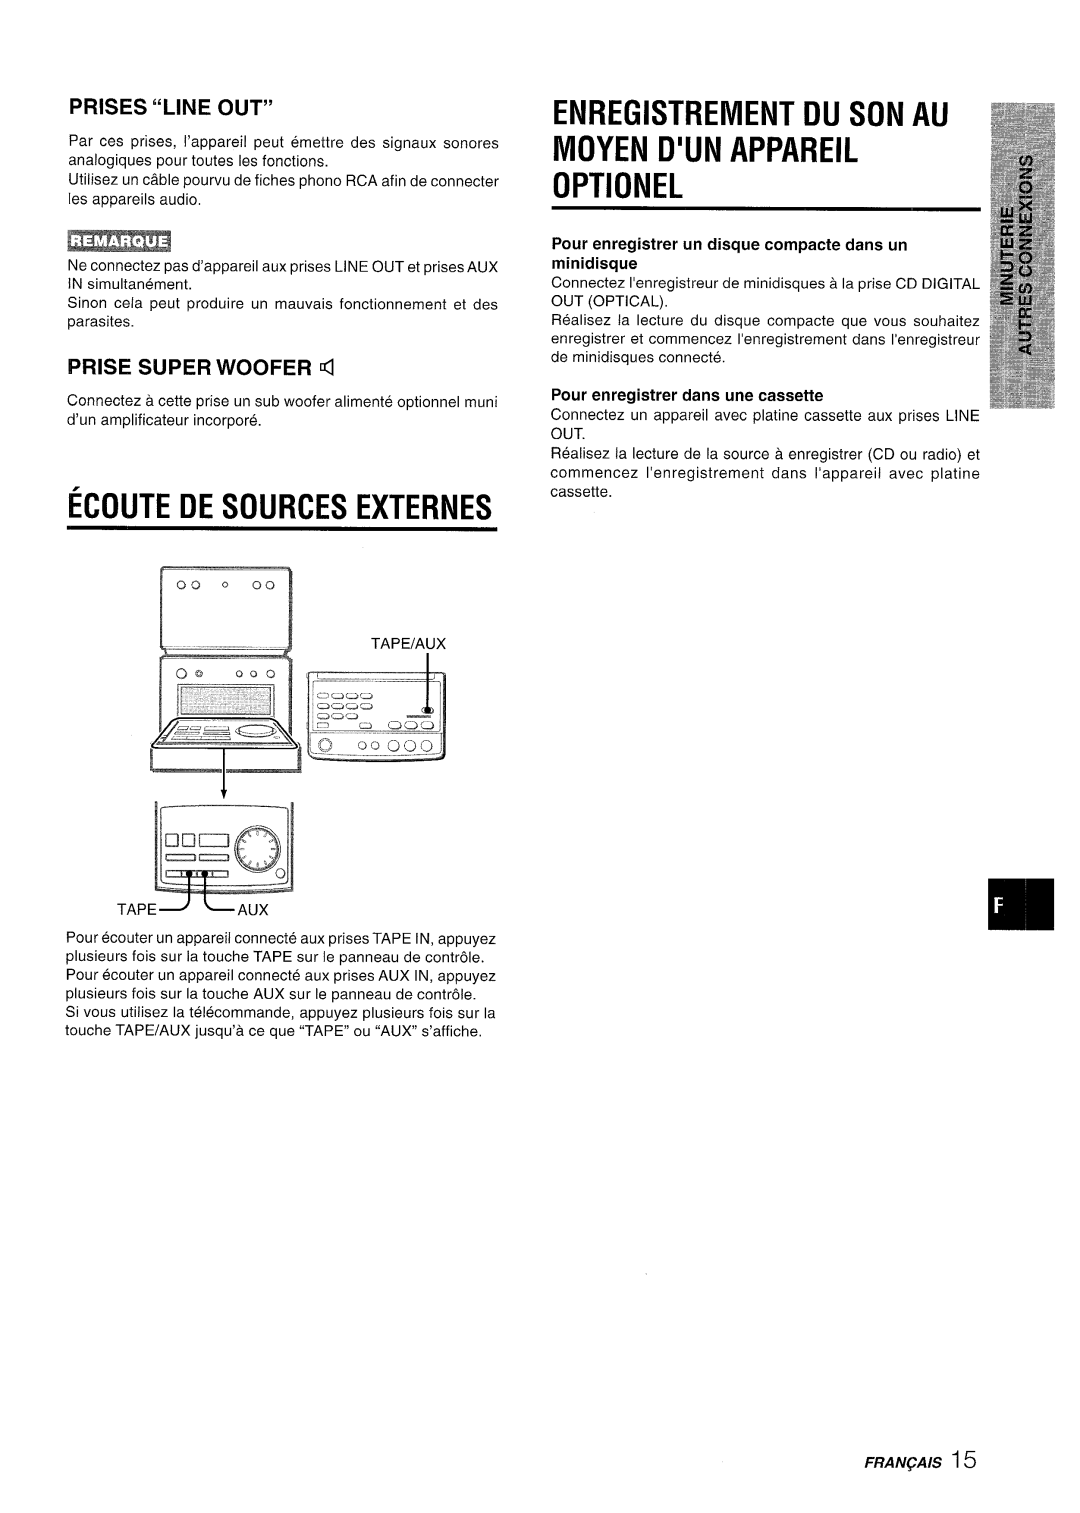 Aiwa XR-M70 manual ECOUTE DE sOuRcEs EXTERNES, Enregistrement Du Son Au Moyen D’Un Appareil Optionel, Prises “Line Out” 